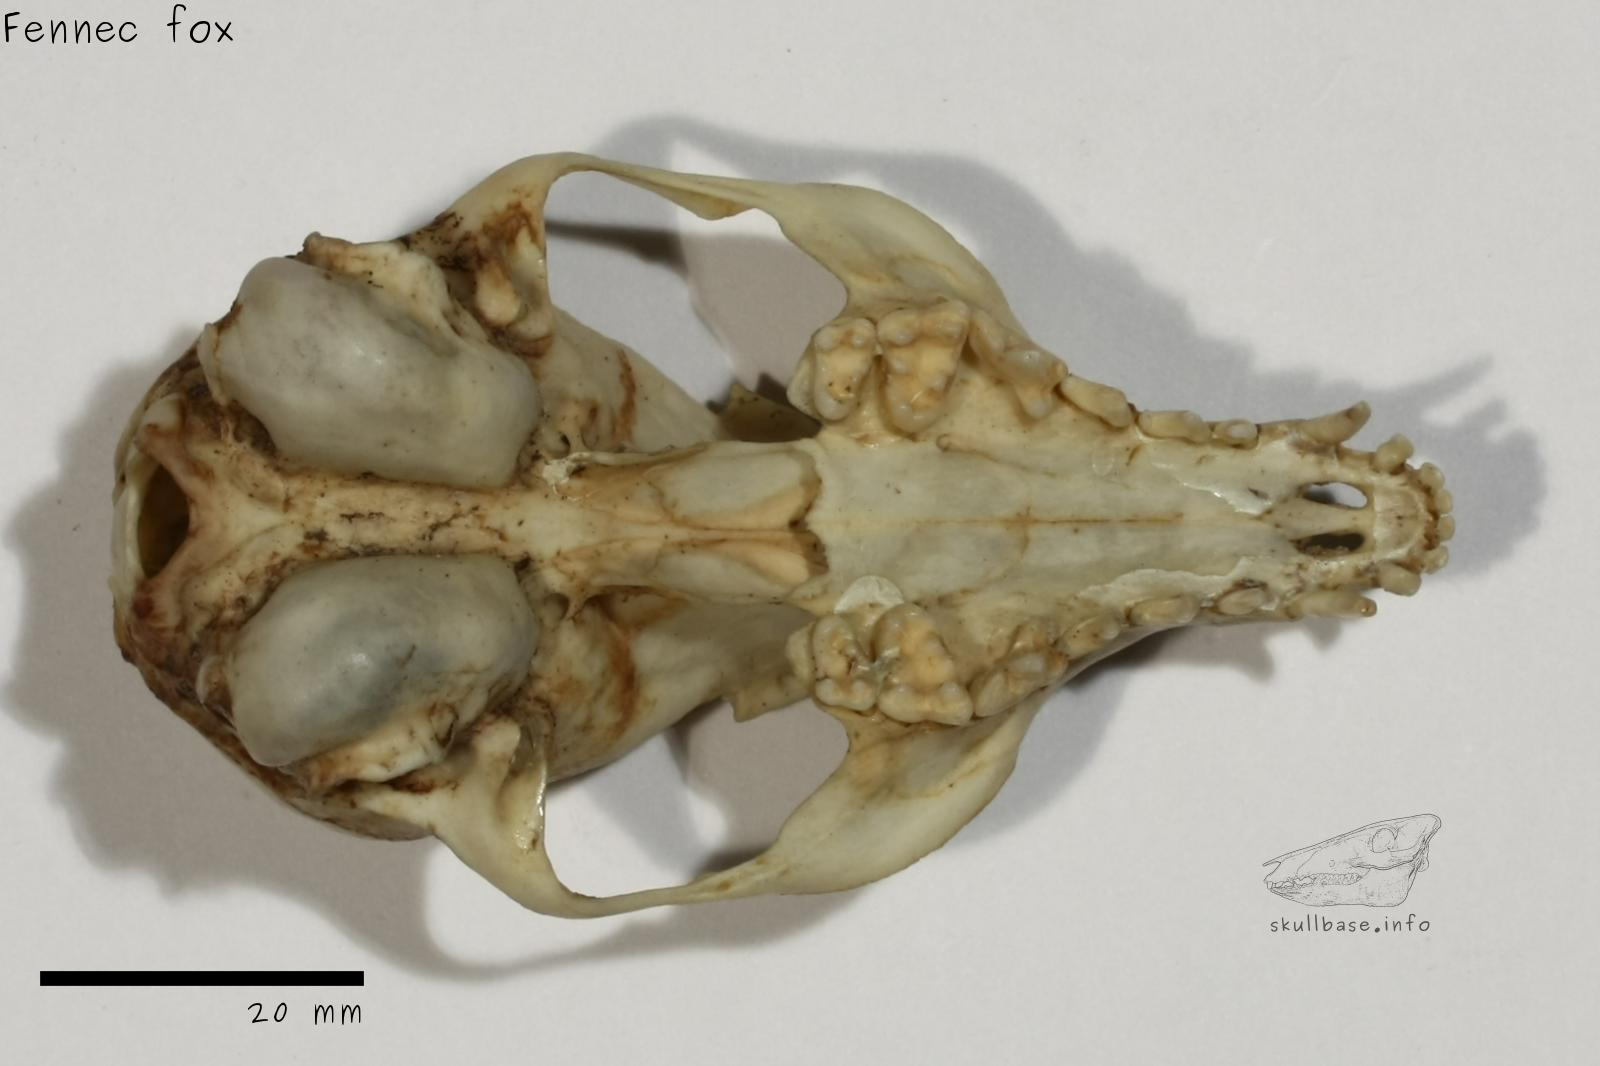 Fennec fox (Vulpes zerda) skull ventral view